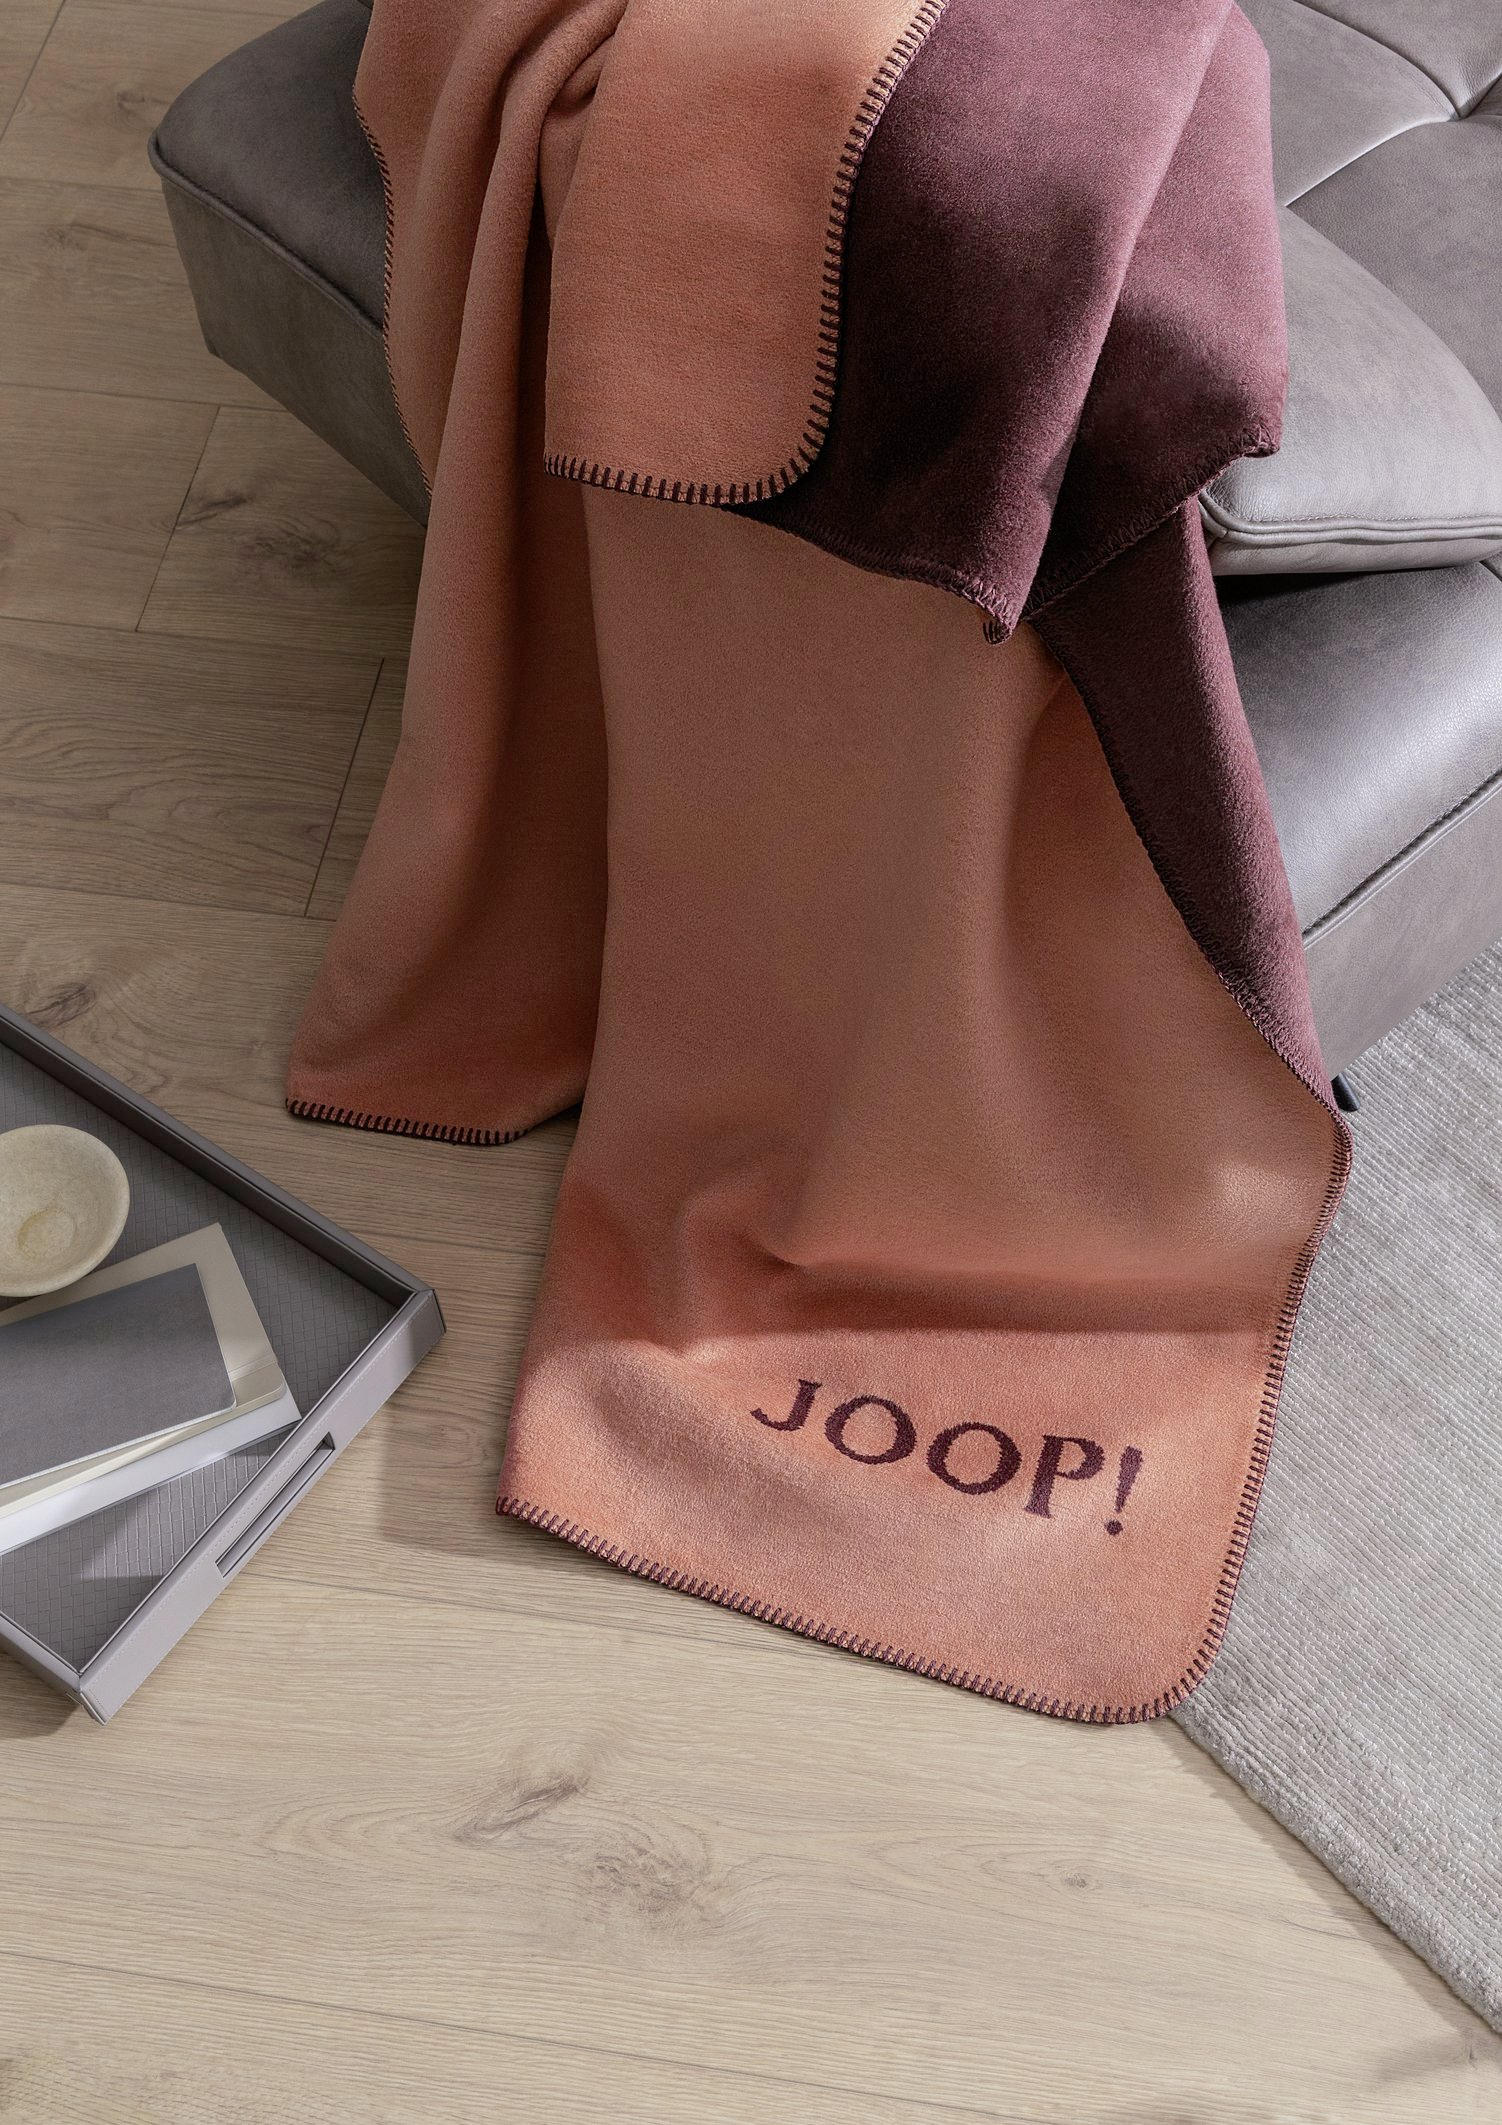 WOHNDECKE Uni Doubleface 150/200 cm Orange, Bordeaux  - Bordeaux/Orange, KONVENTIONELL, Textil (150/200cm) - Joop!